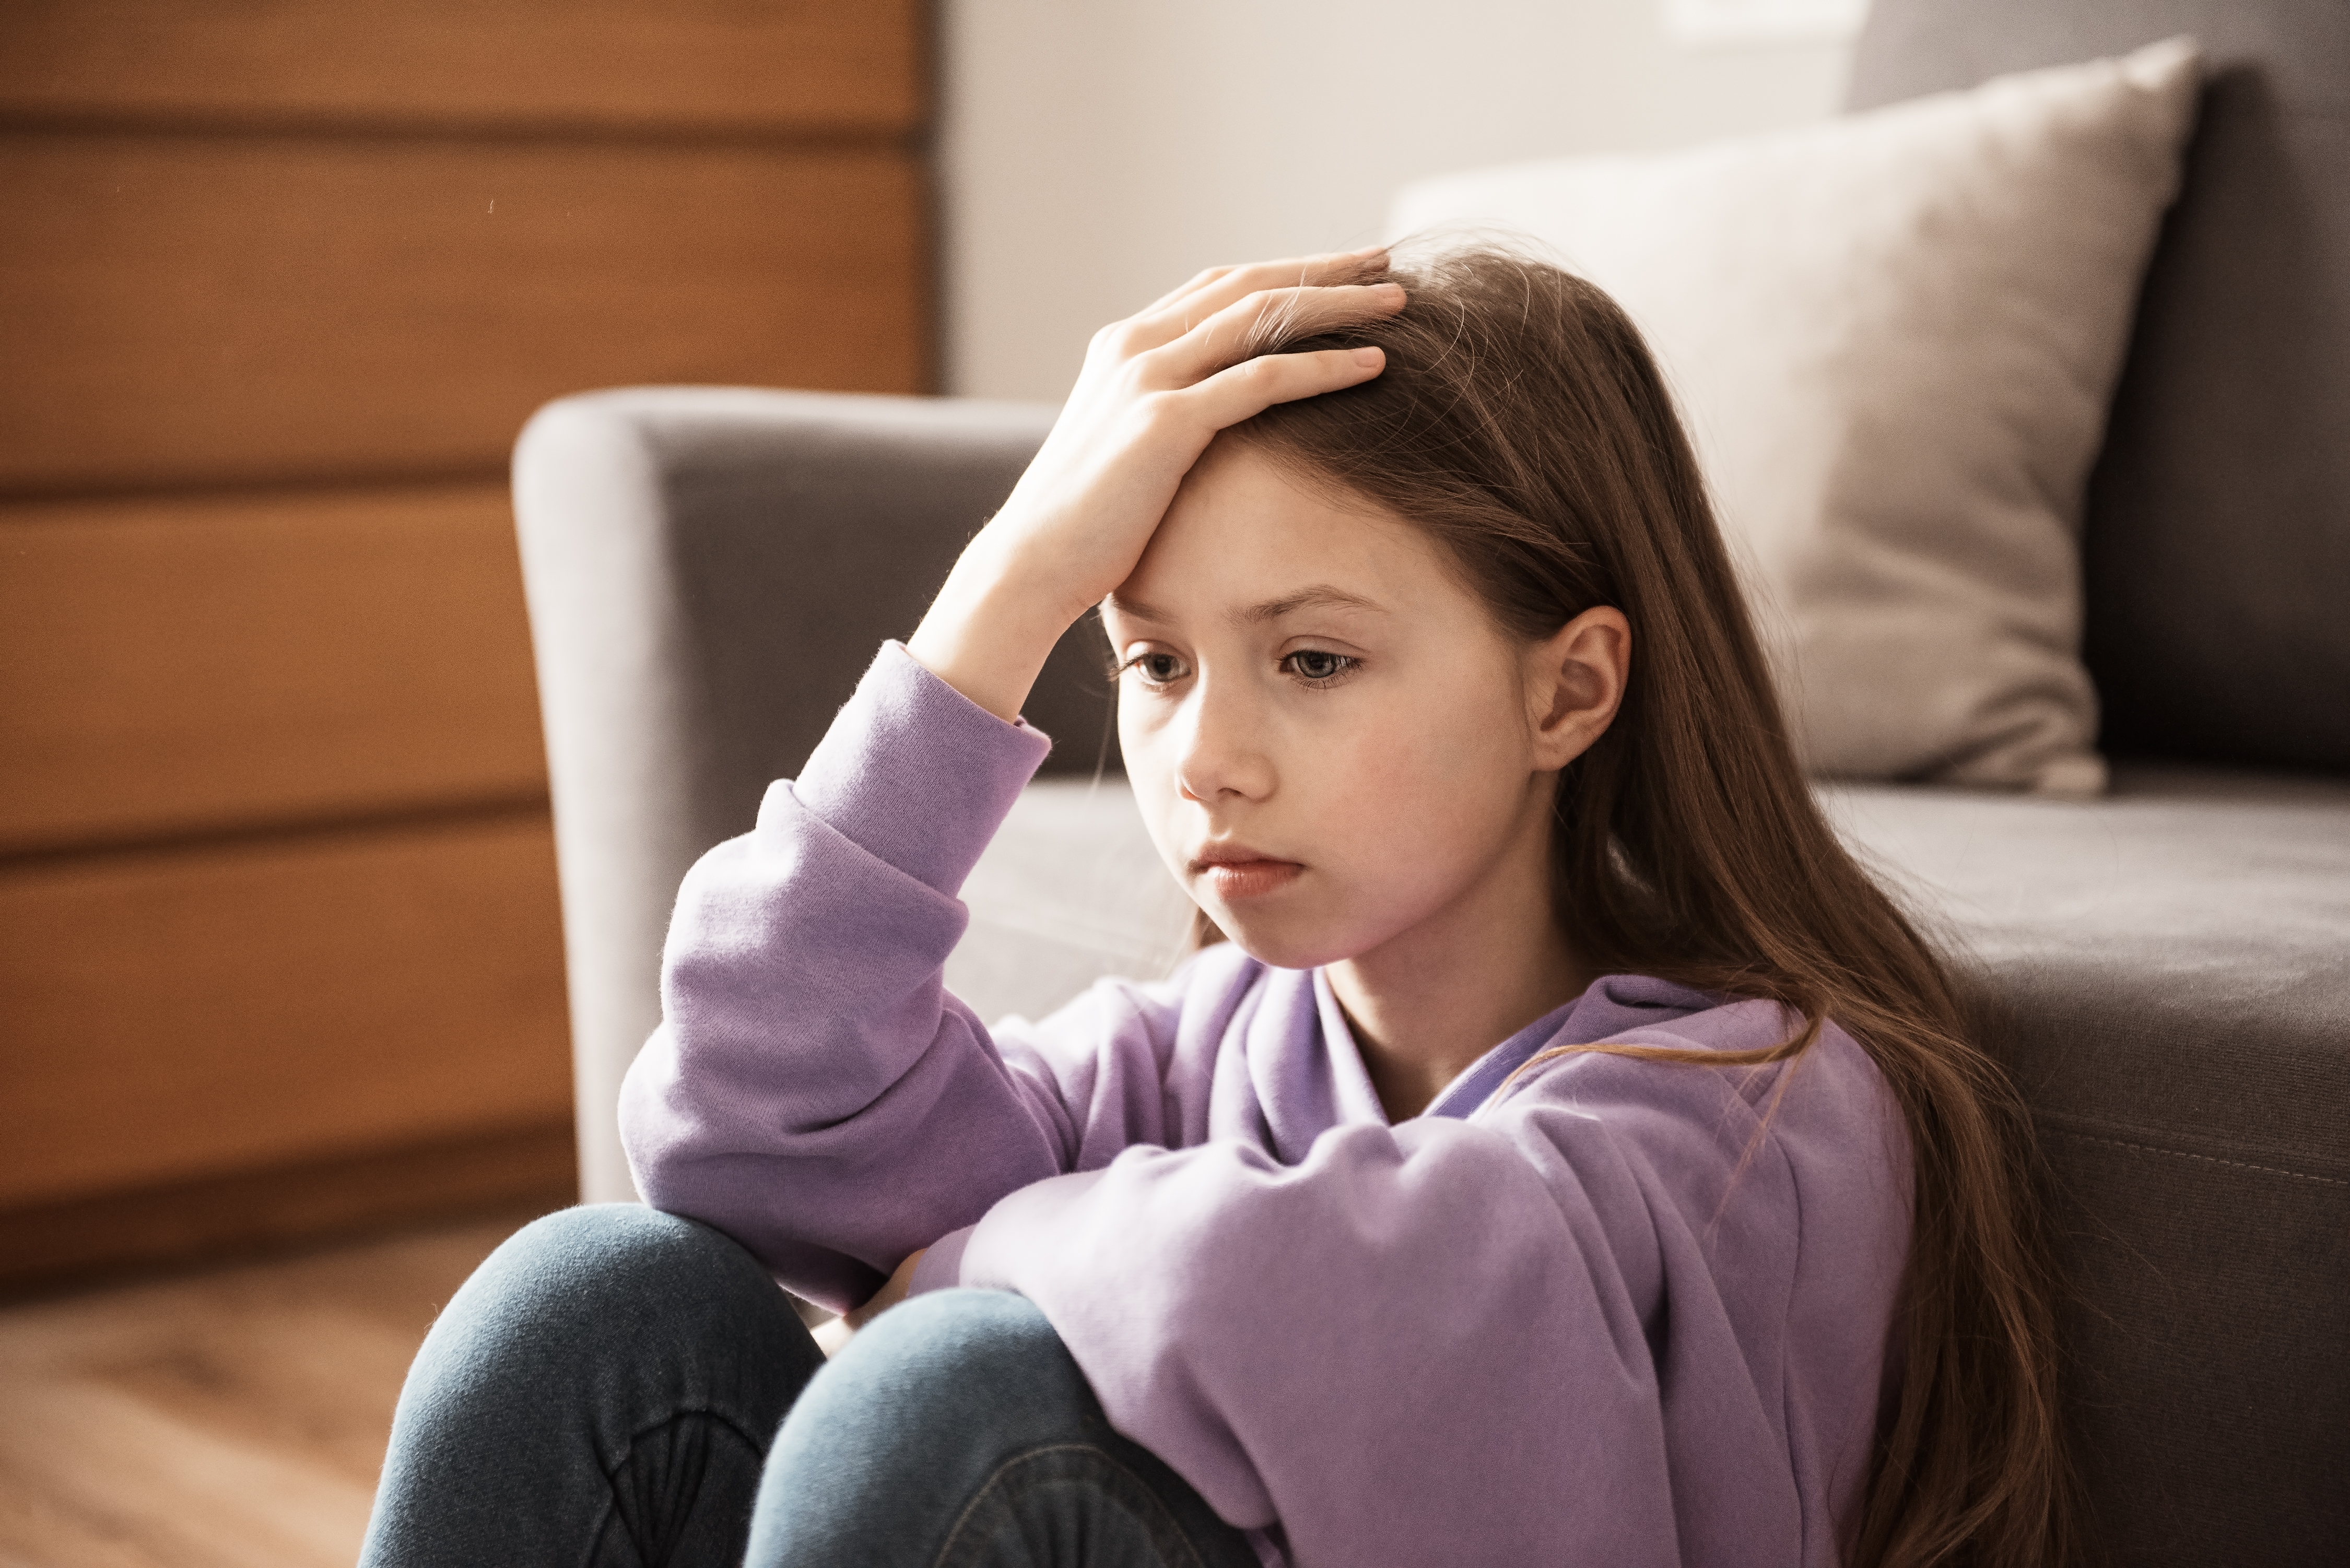 Ein deprimiertes Mädchen im Teenageralter sitzt in einem Haus | Quelle: Shutterstock